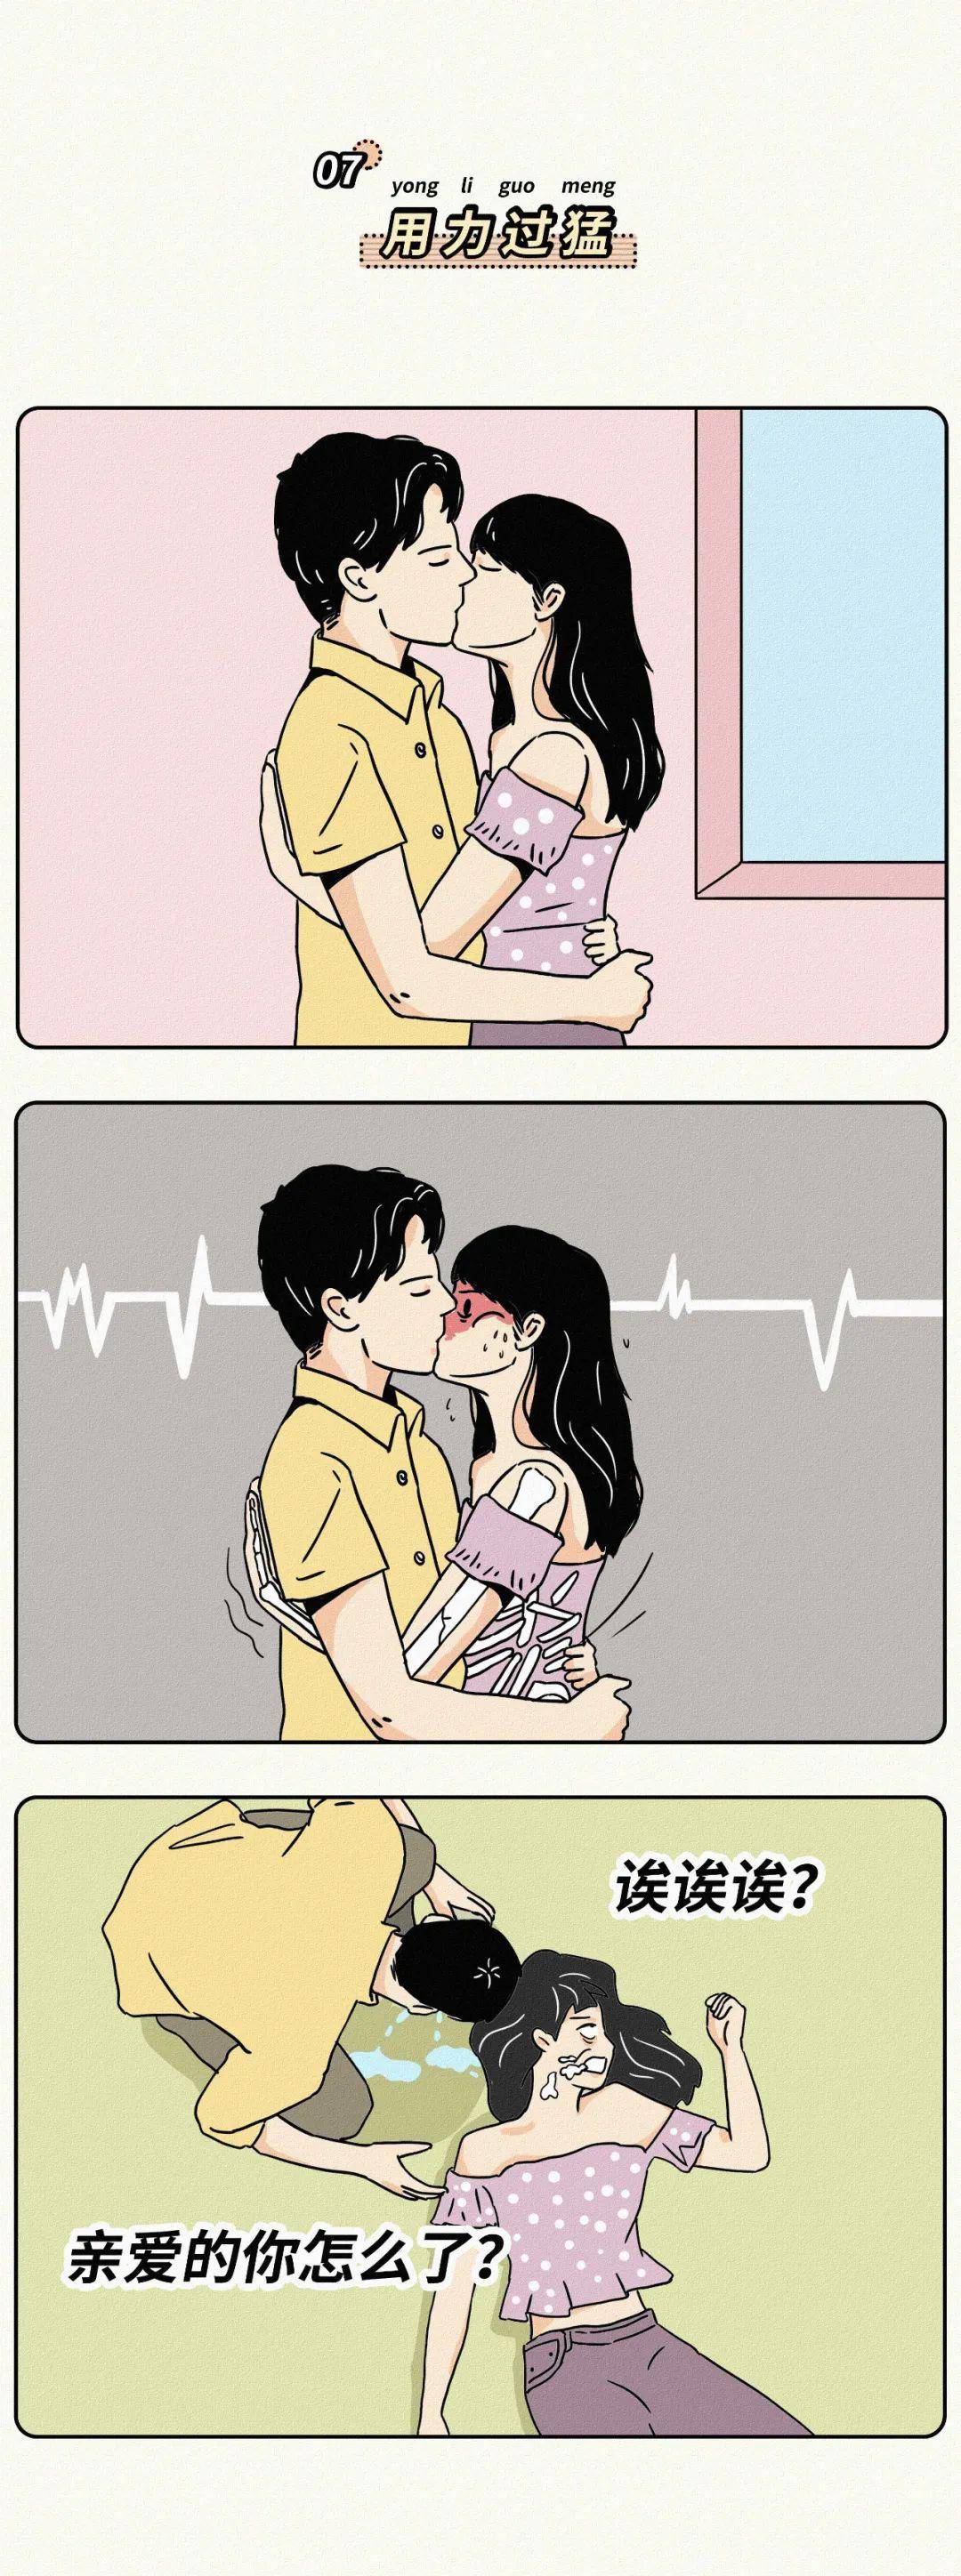 【情感漫画】接吻要不要伸舌头?